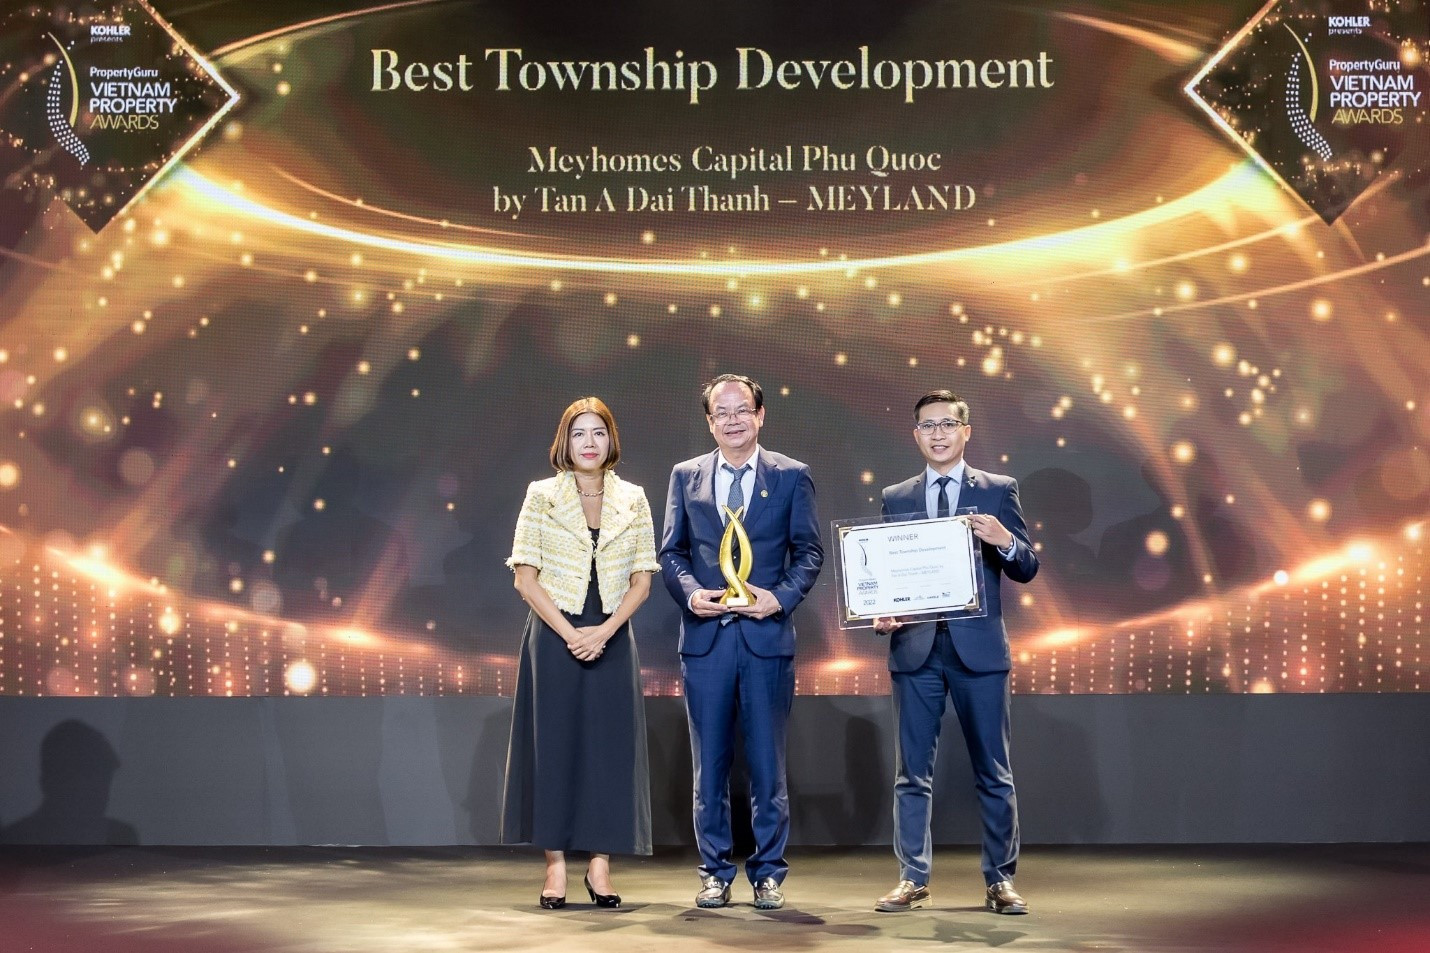 Đại diện Tân Á Đại Thành - Meyland nhận giải thưởng dự án “Khu đô thị tốt nhất”